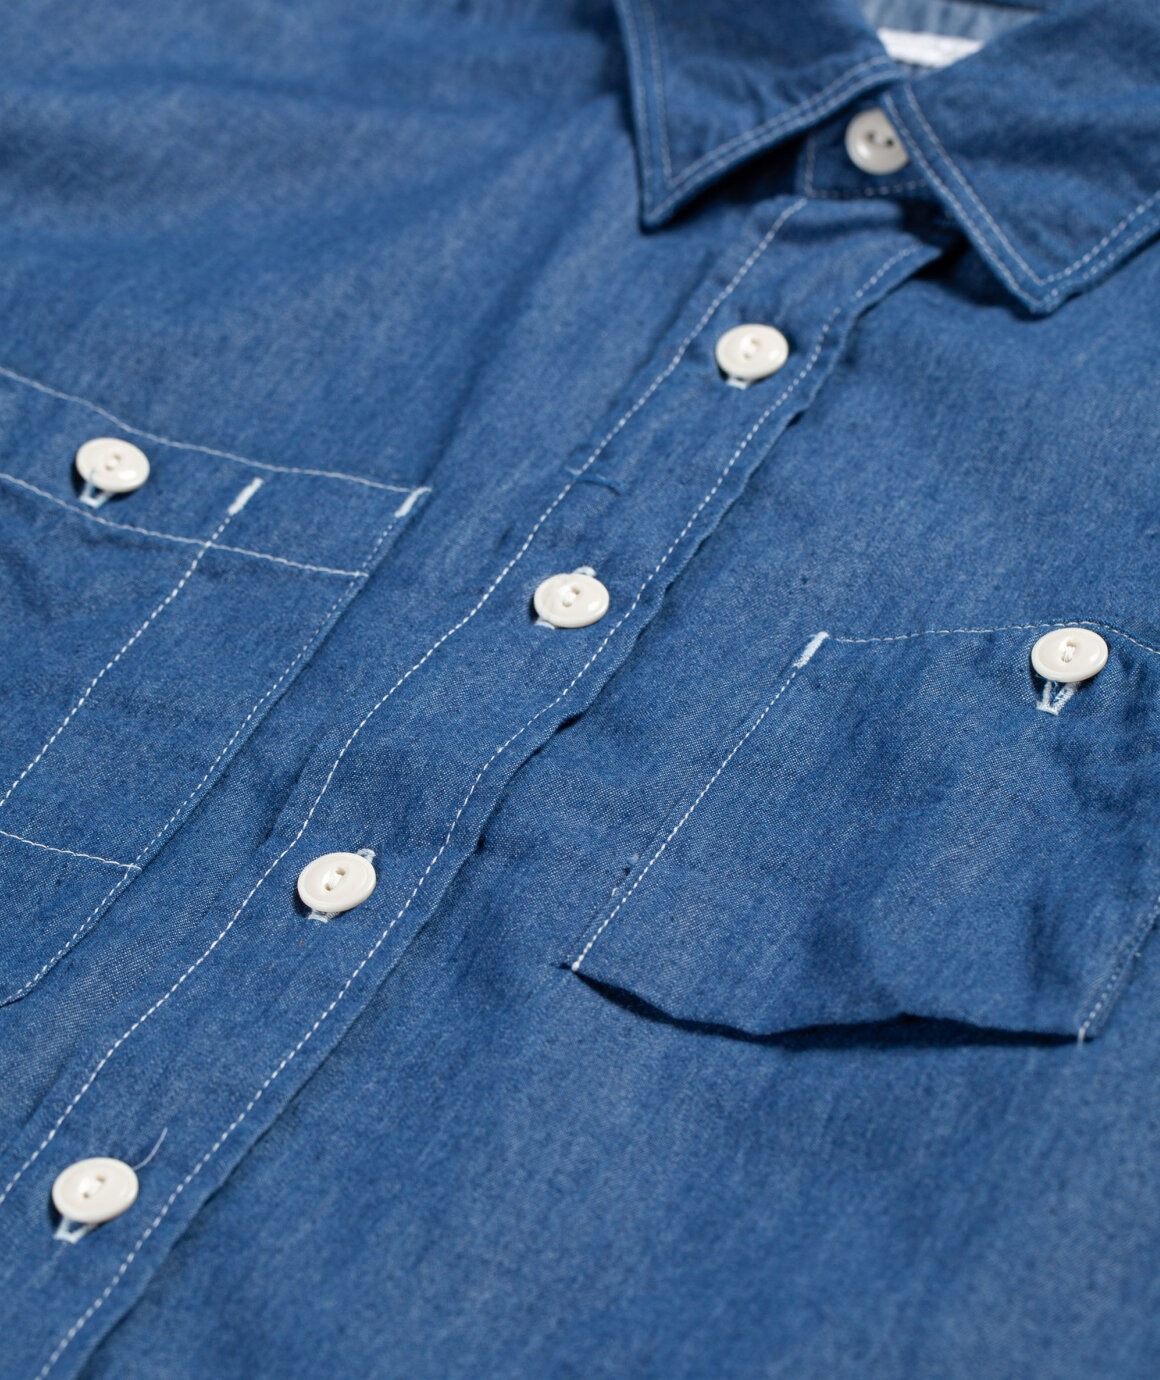 Détail caractéristique des poches asymétriques. Surpiqures contrastées qui collent parfaitement au registre workwear. 